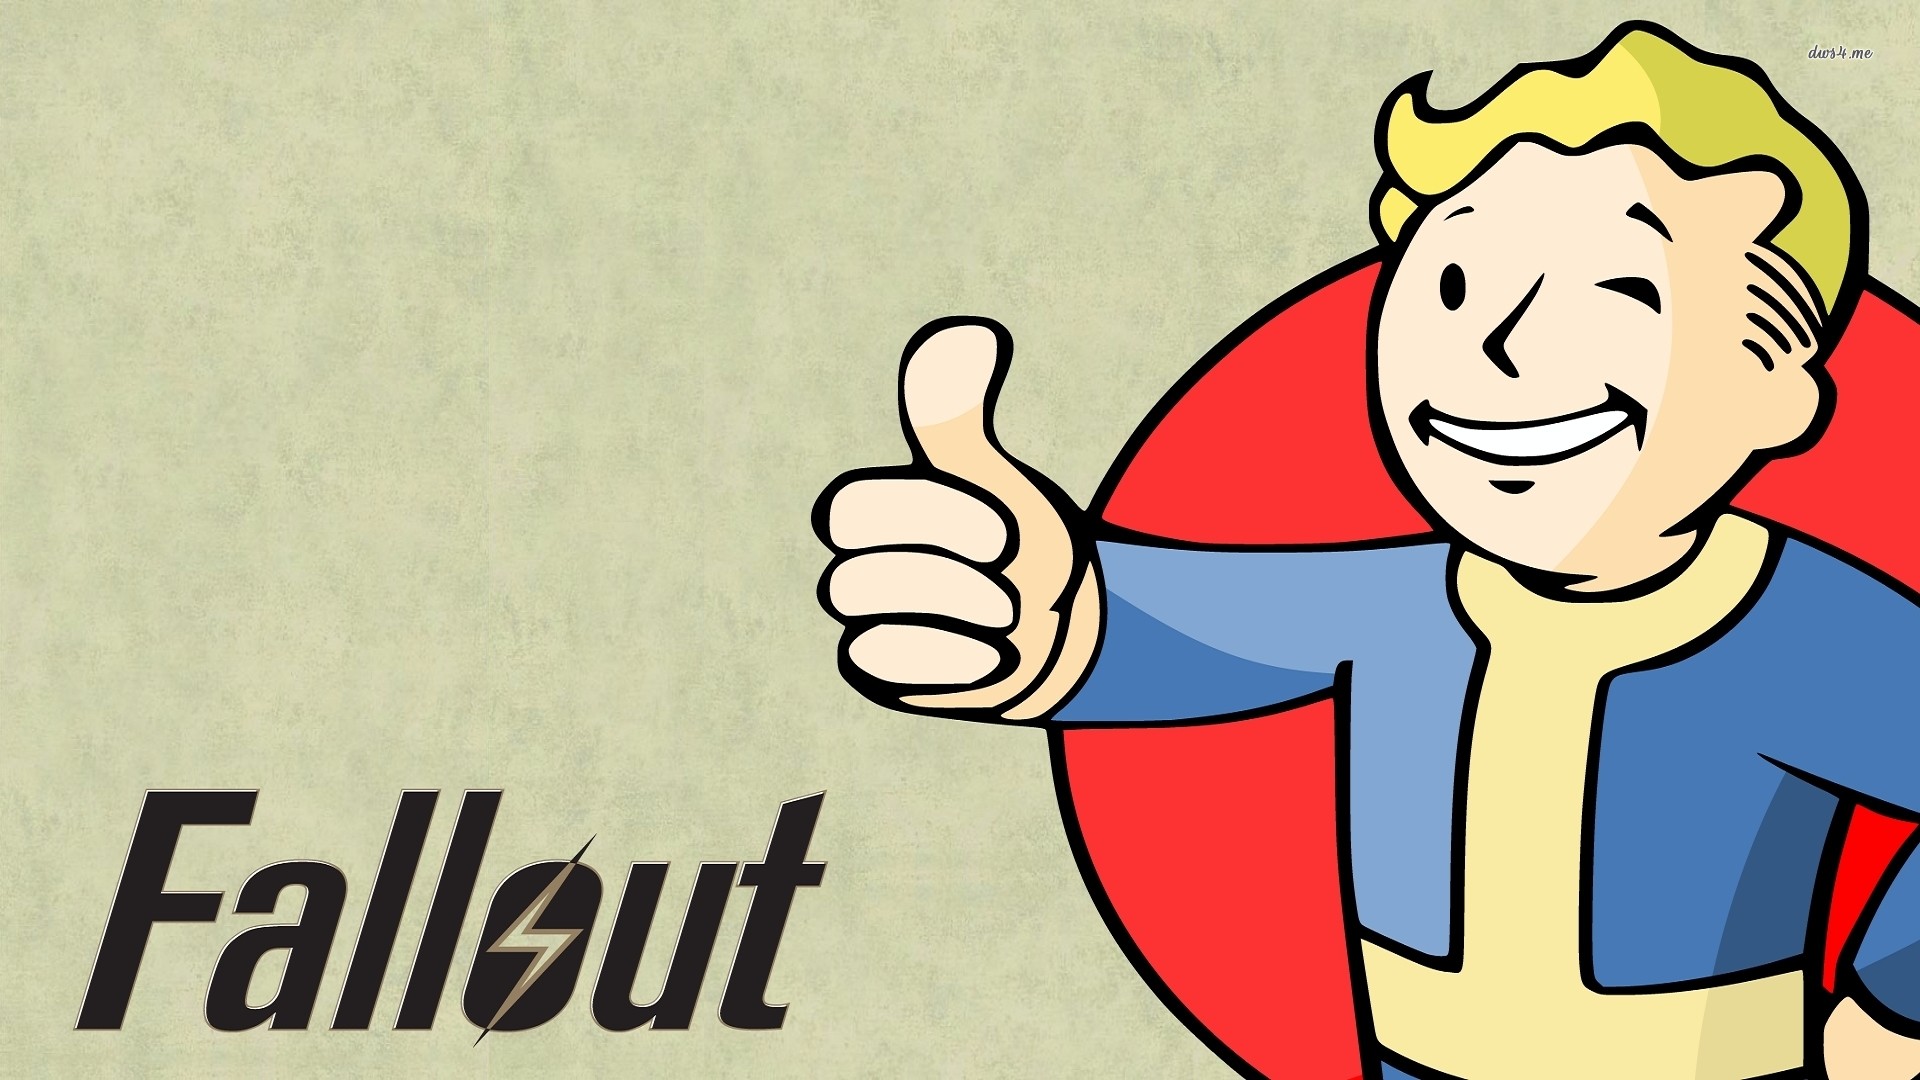 Vault Boy – Fallout wallpaper 1280×800 Vault Boy – Fallout wallpaper